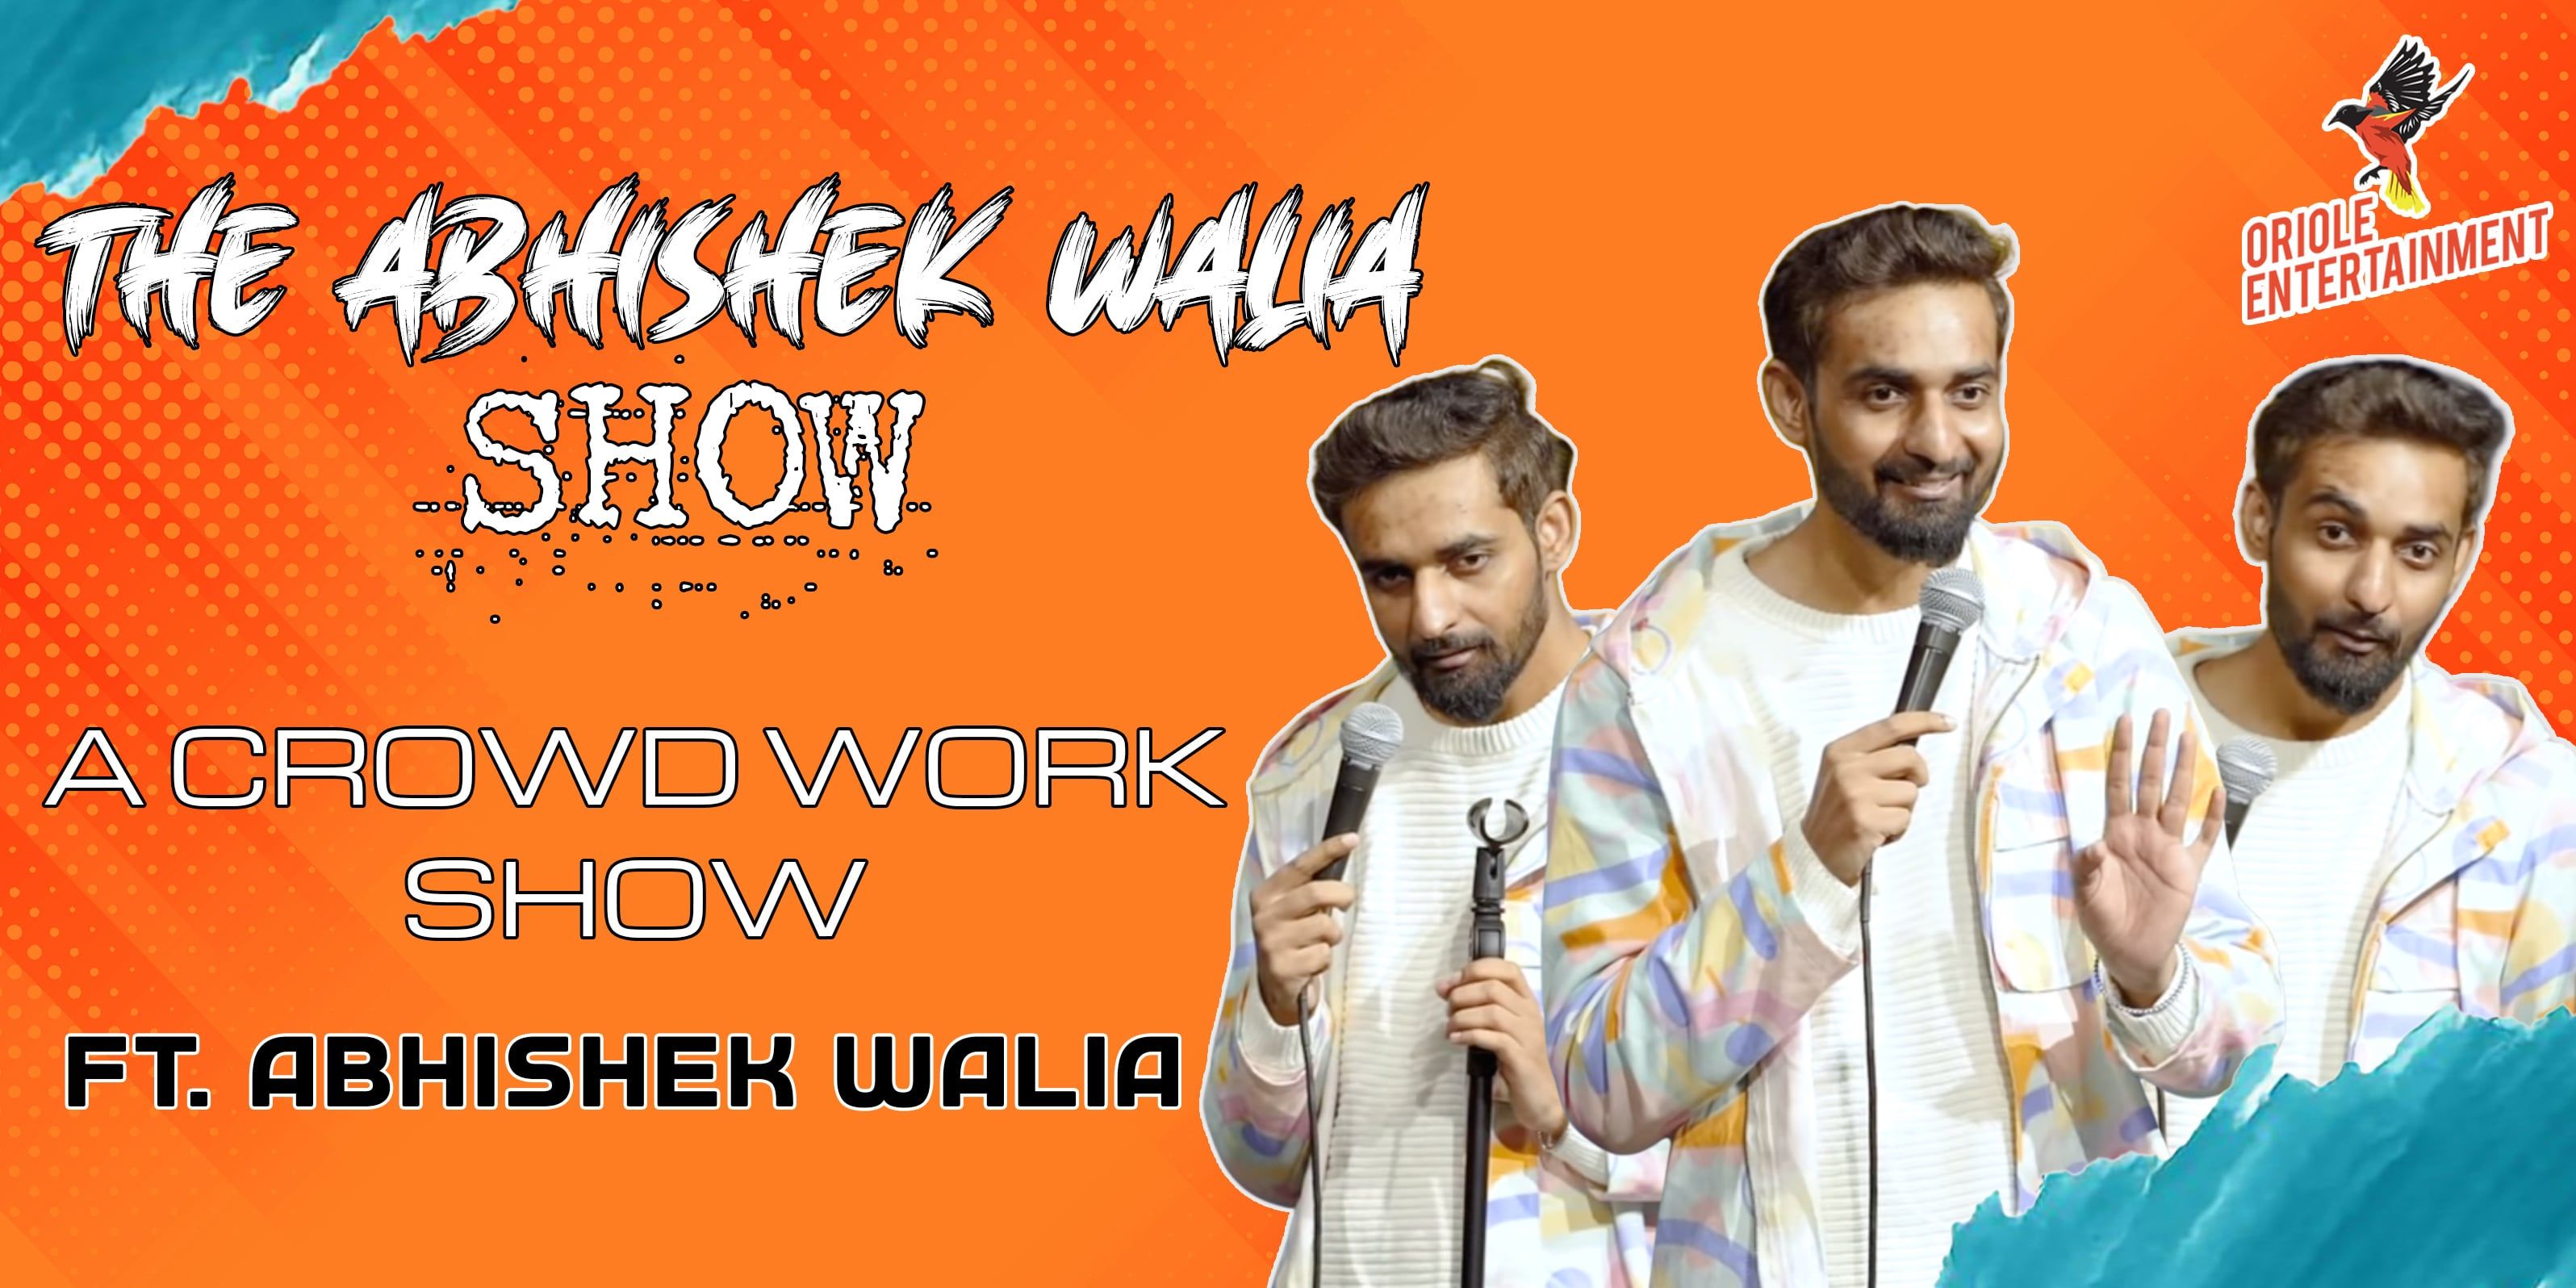 The Abhishek Walia Show in Gurgaon